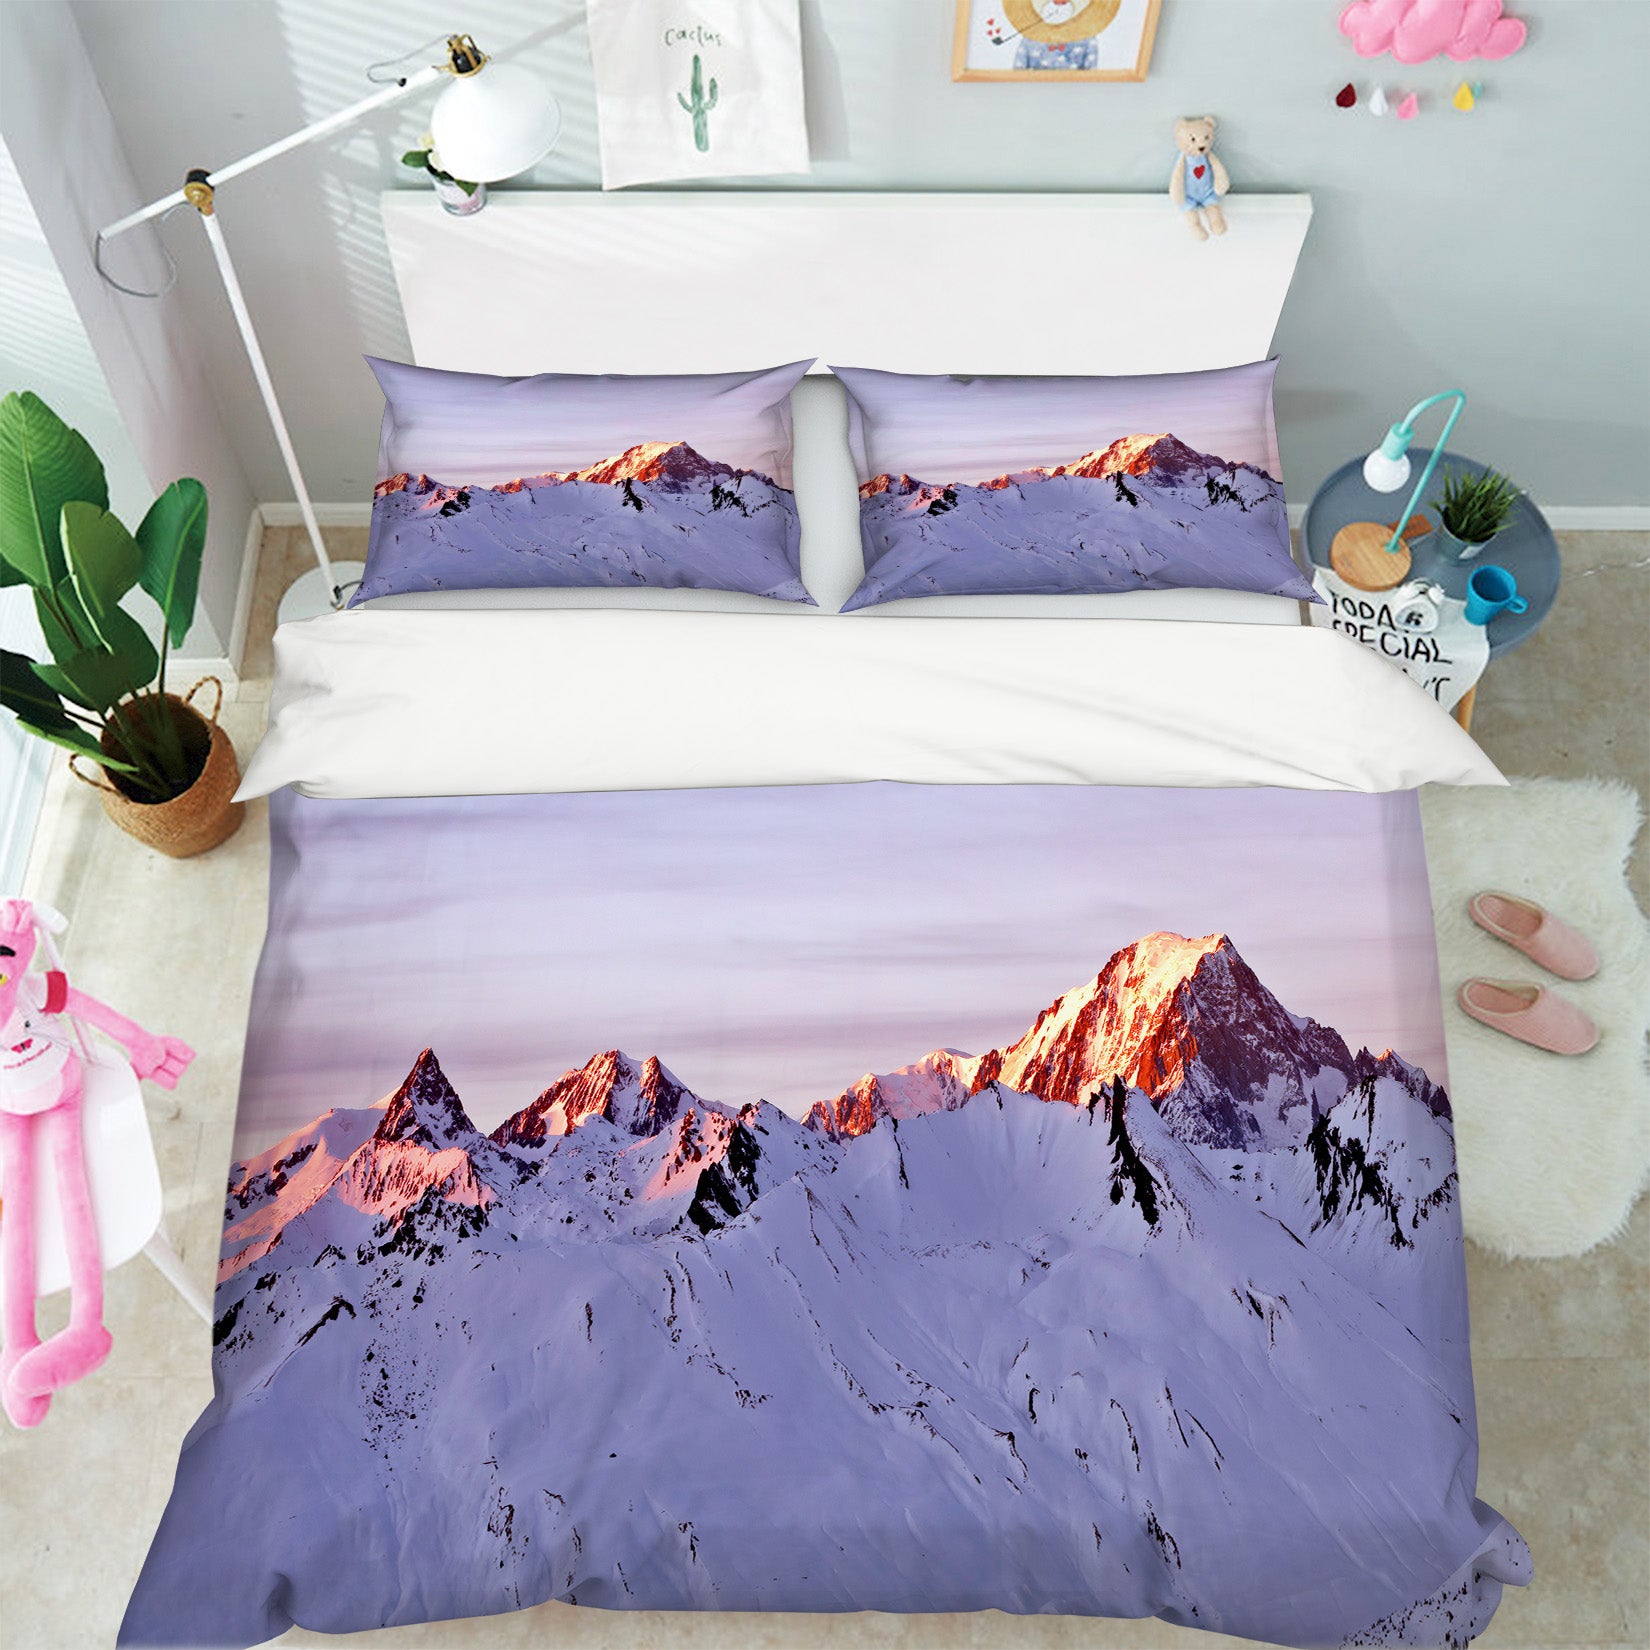 3D Snow Mountain 8581 Assaf Frank Bedding Bed Pillowcases Quilt